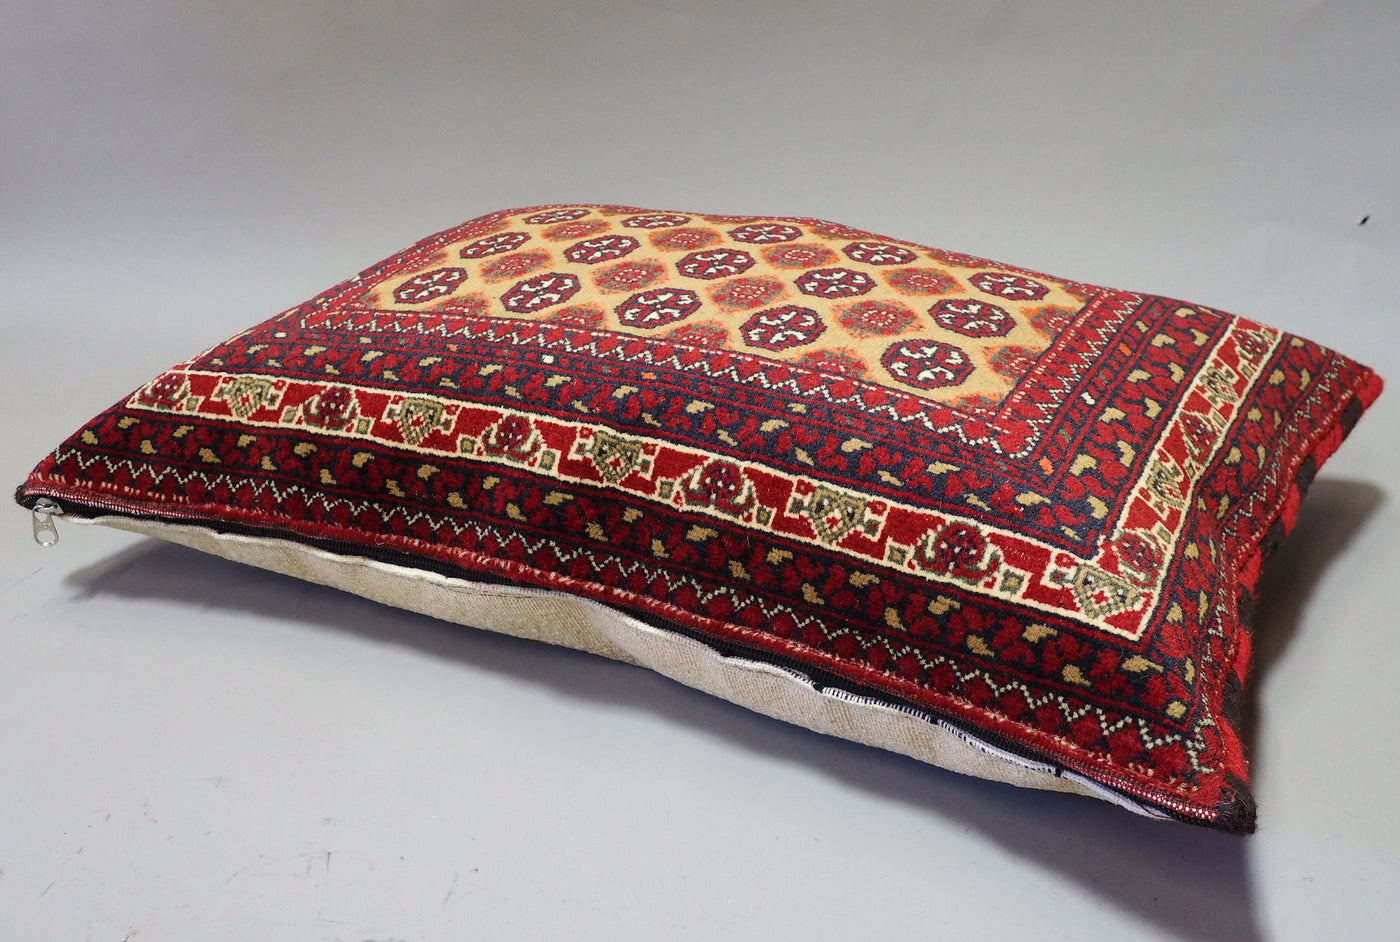 77x52 cm orient Afghan Tukmeische Teppich nomaden Handgeknüpft wollen Kissen sitzkissen bodenkissen cushion 1001-nacht  aus Afghanistan BS/3  Orientsbazar   